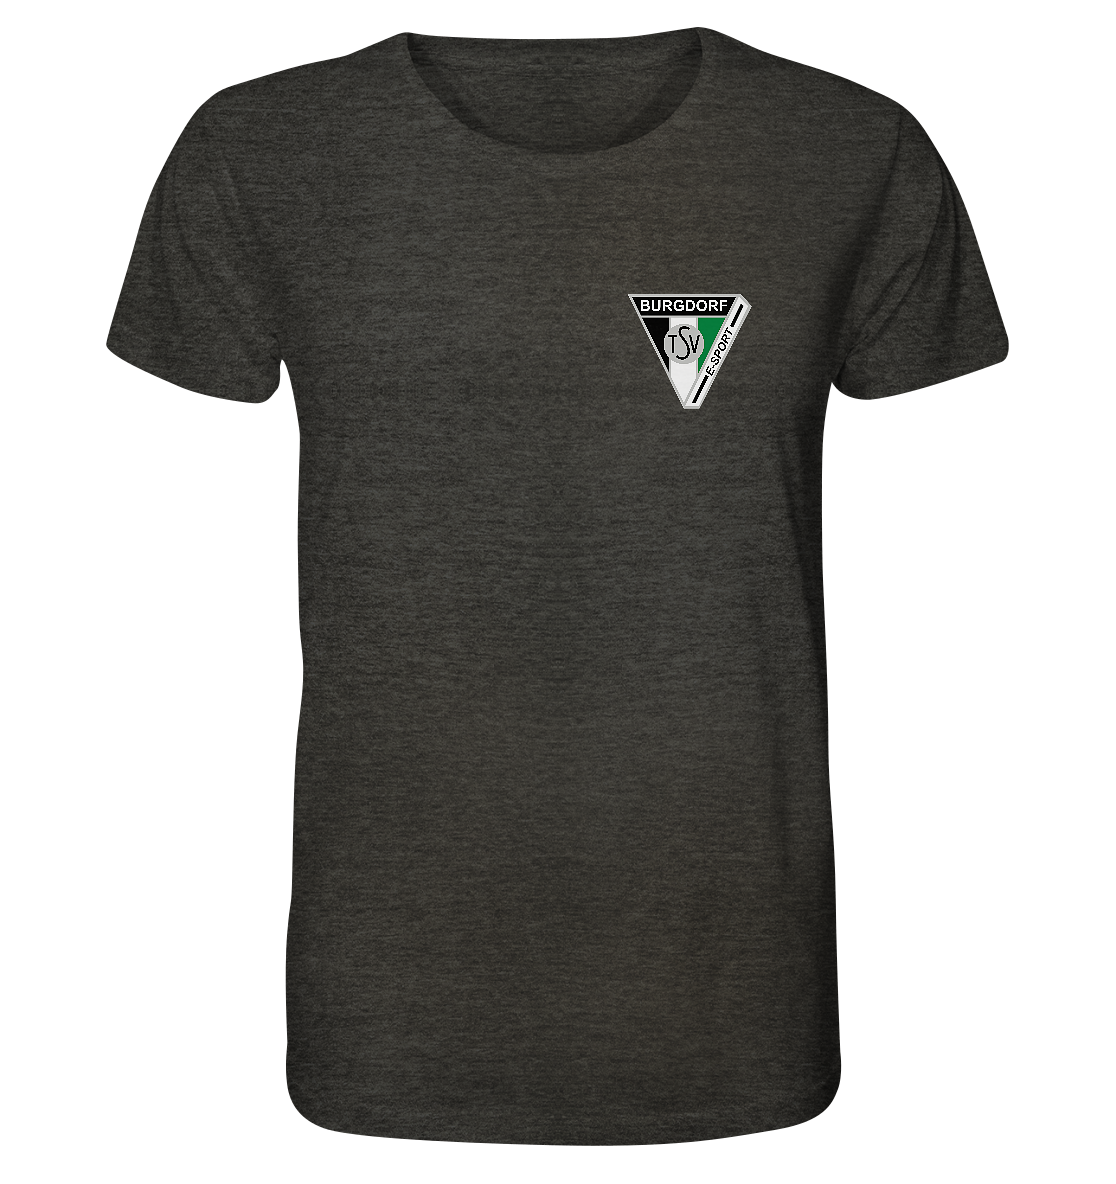 TSV Burgdorf - E-Sport -  Shirt (meliert)